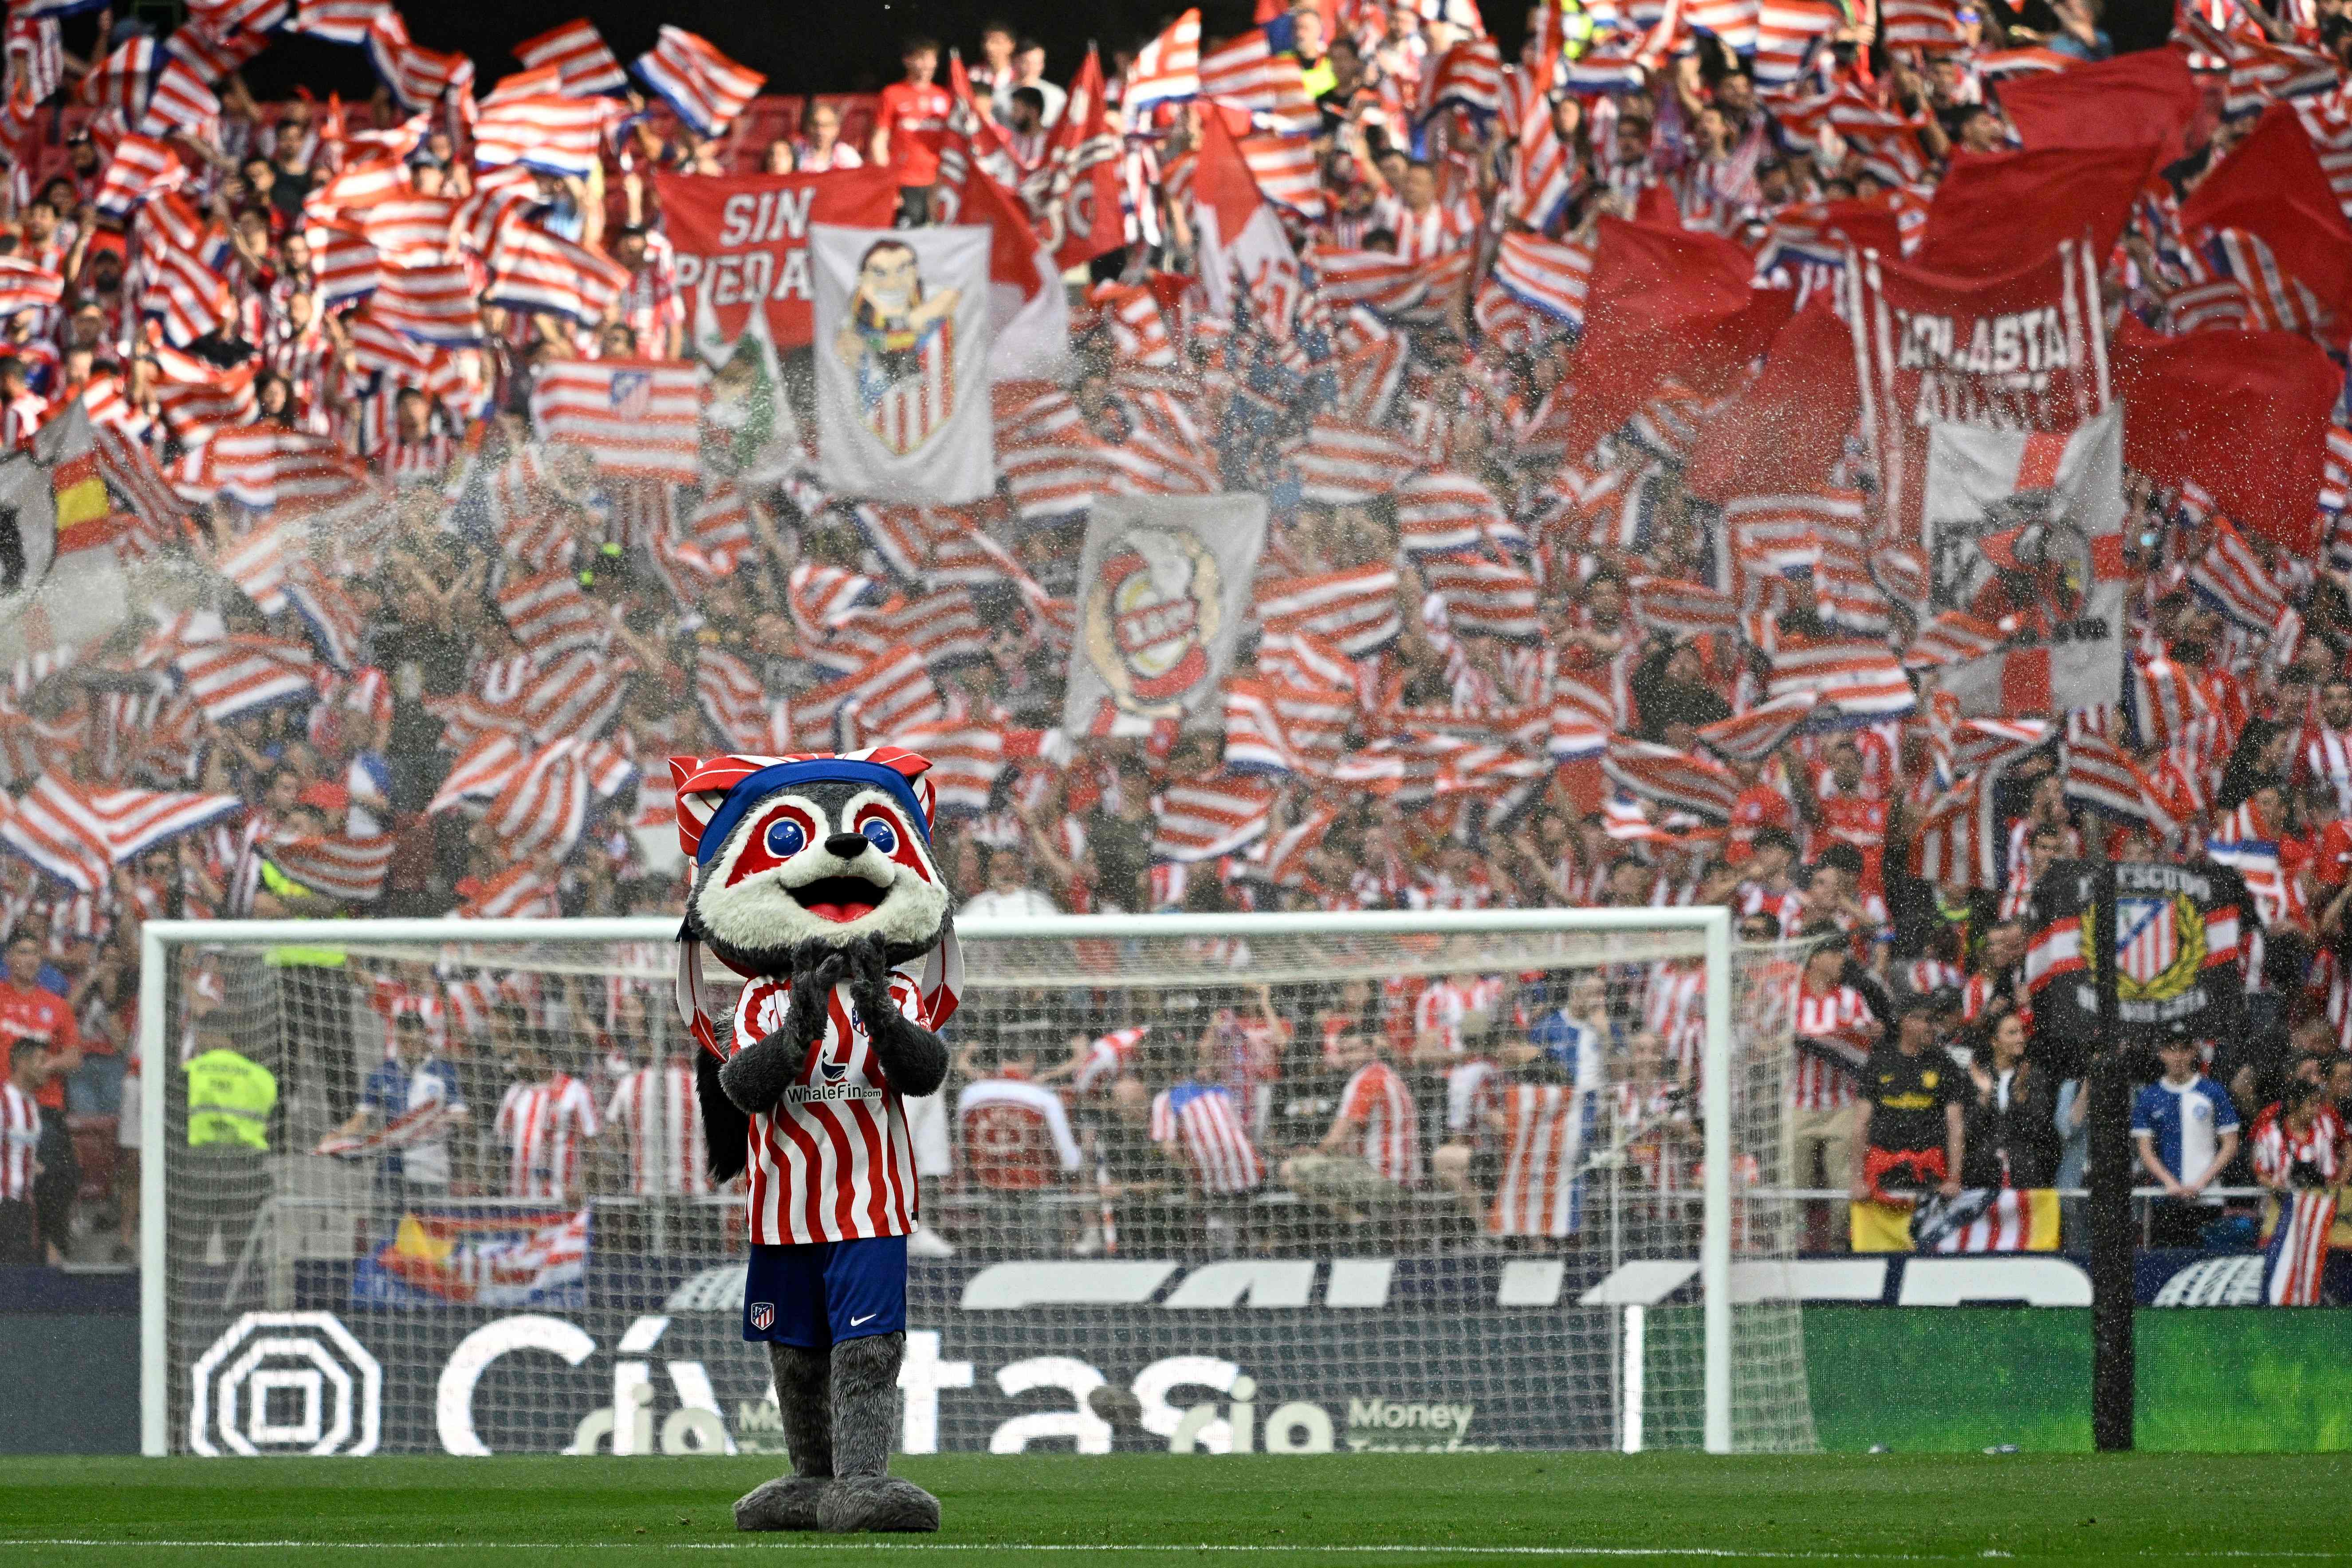 La victoria del Atlético en su 120 aniversario